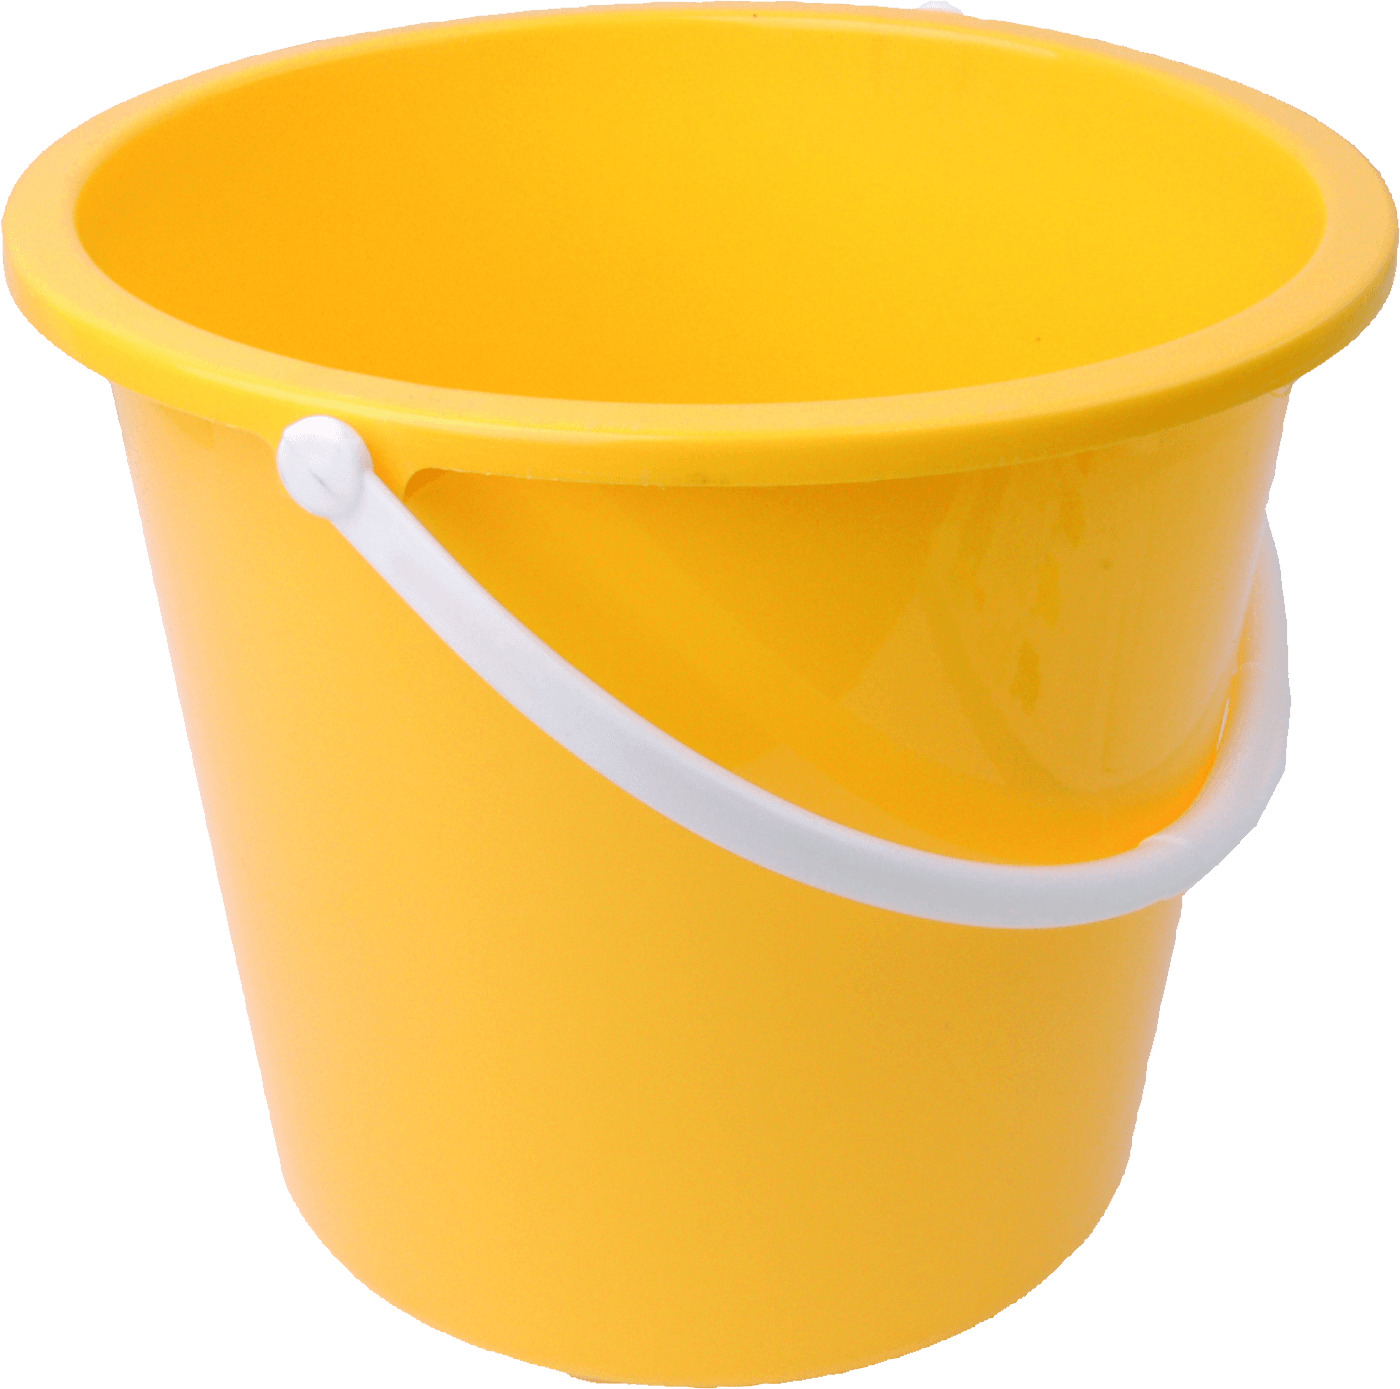 Yellow Bucket icons